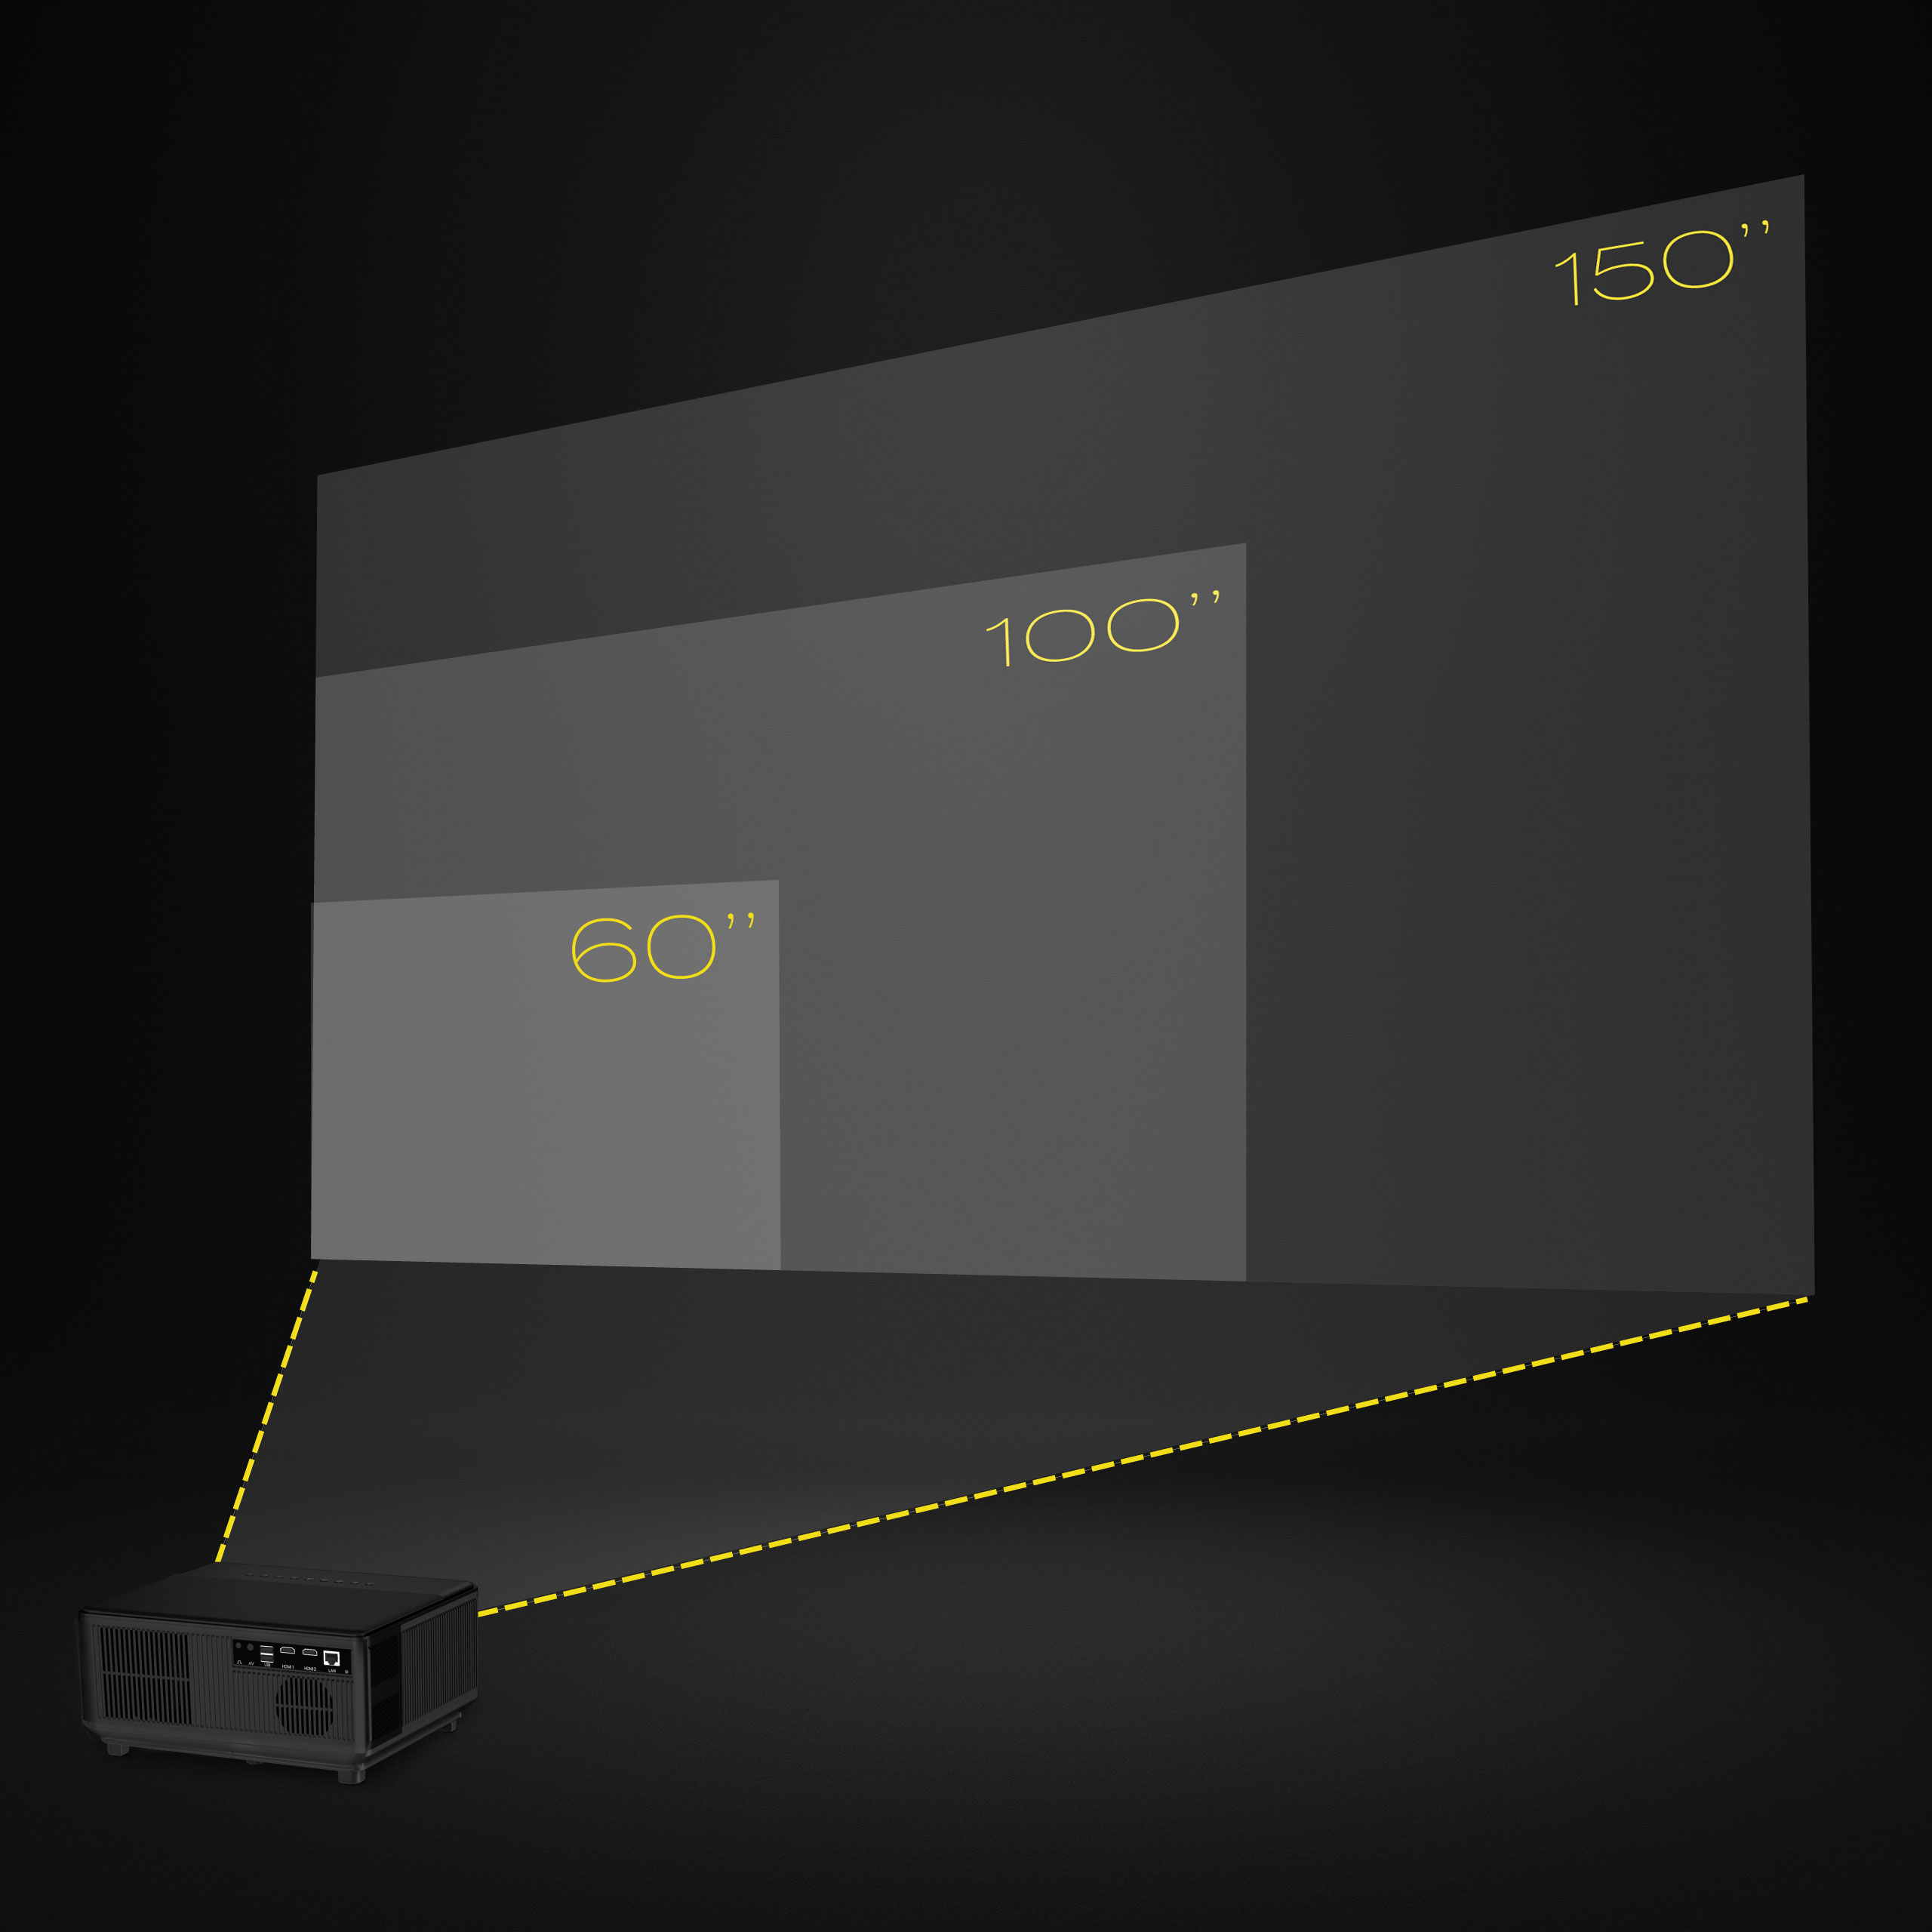 OVERMAX Multipic 7000 Projektor(Full-HD, 6.1 Lumen)